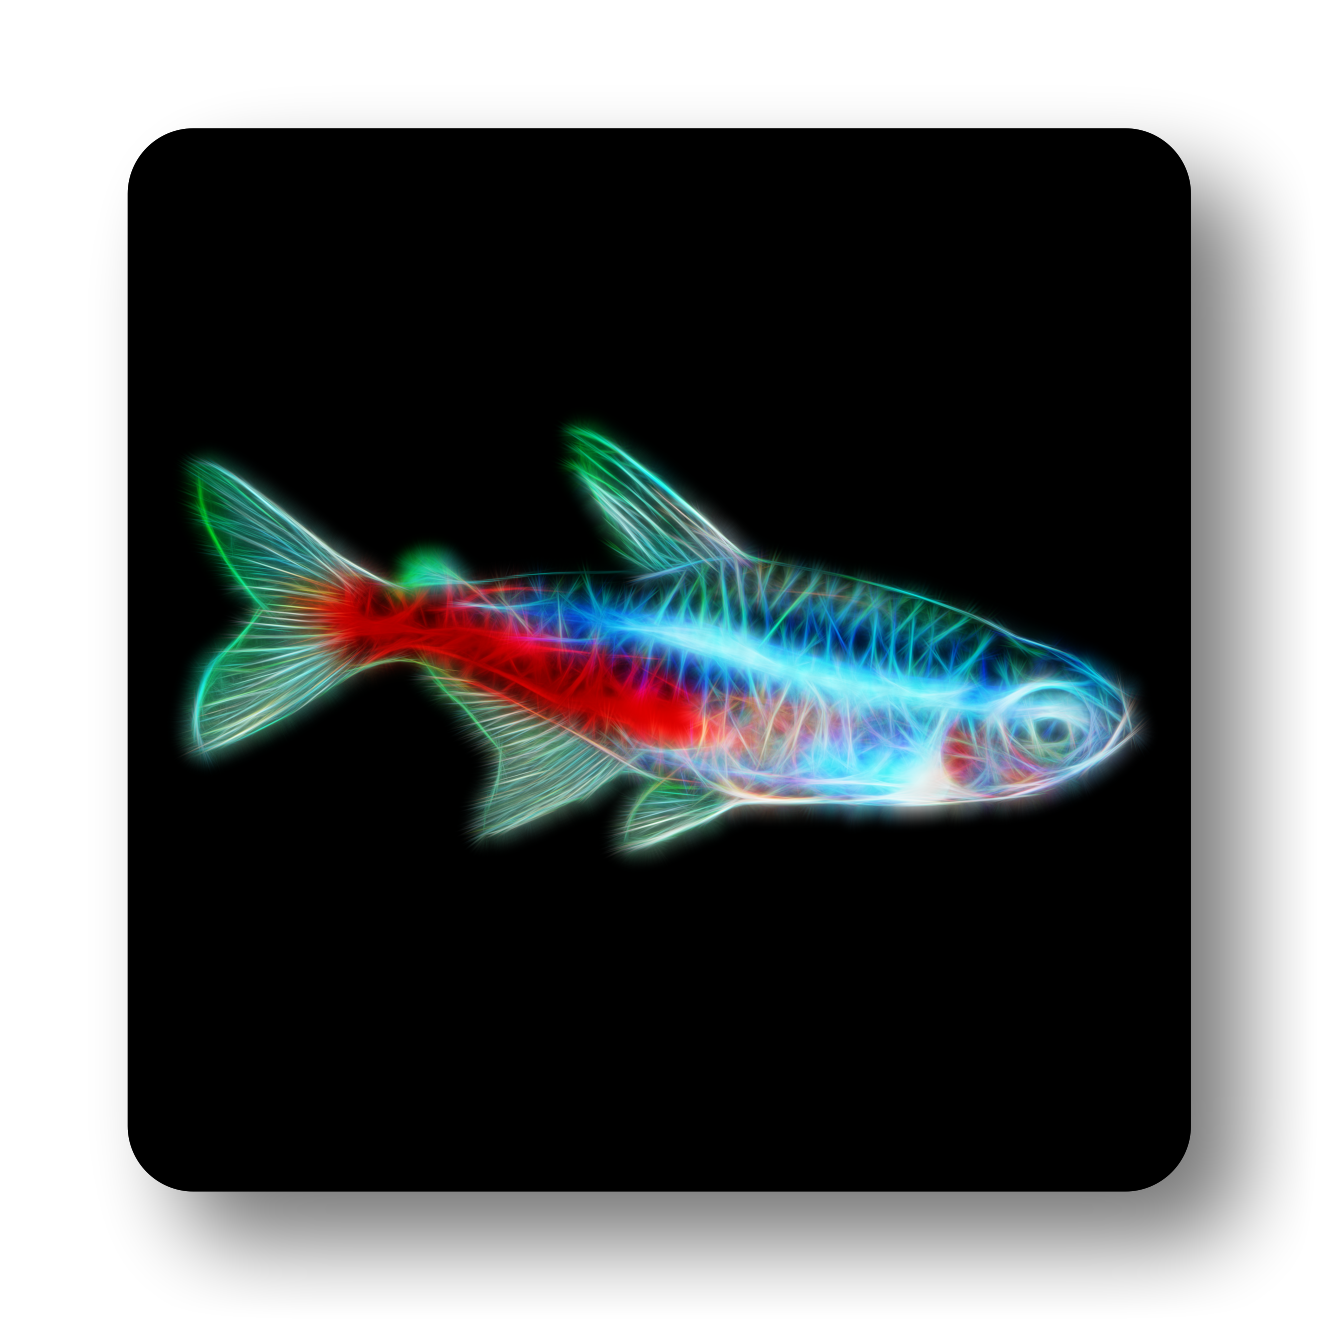 Freshwater Aquarium Fish Coasters - Various Designs